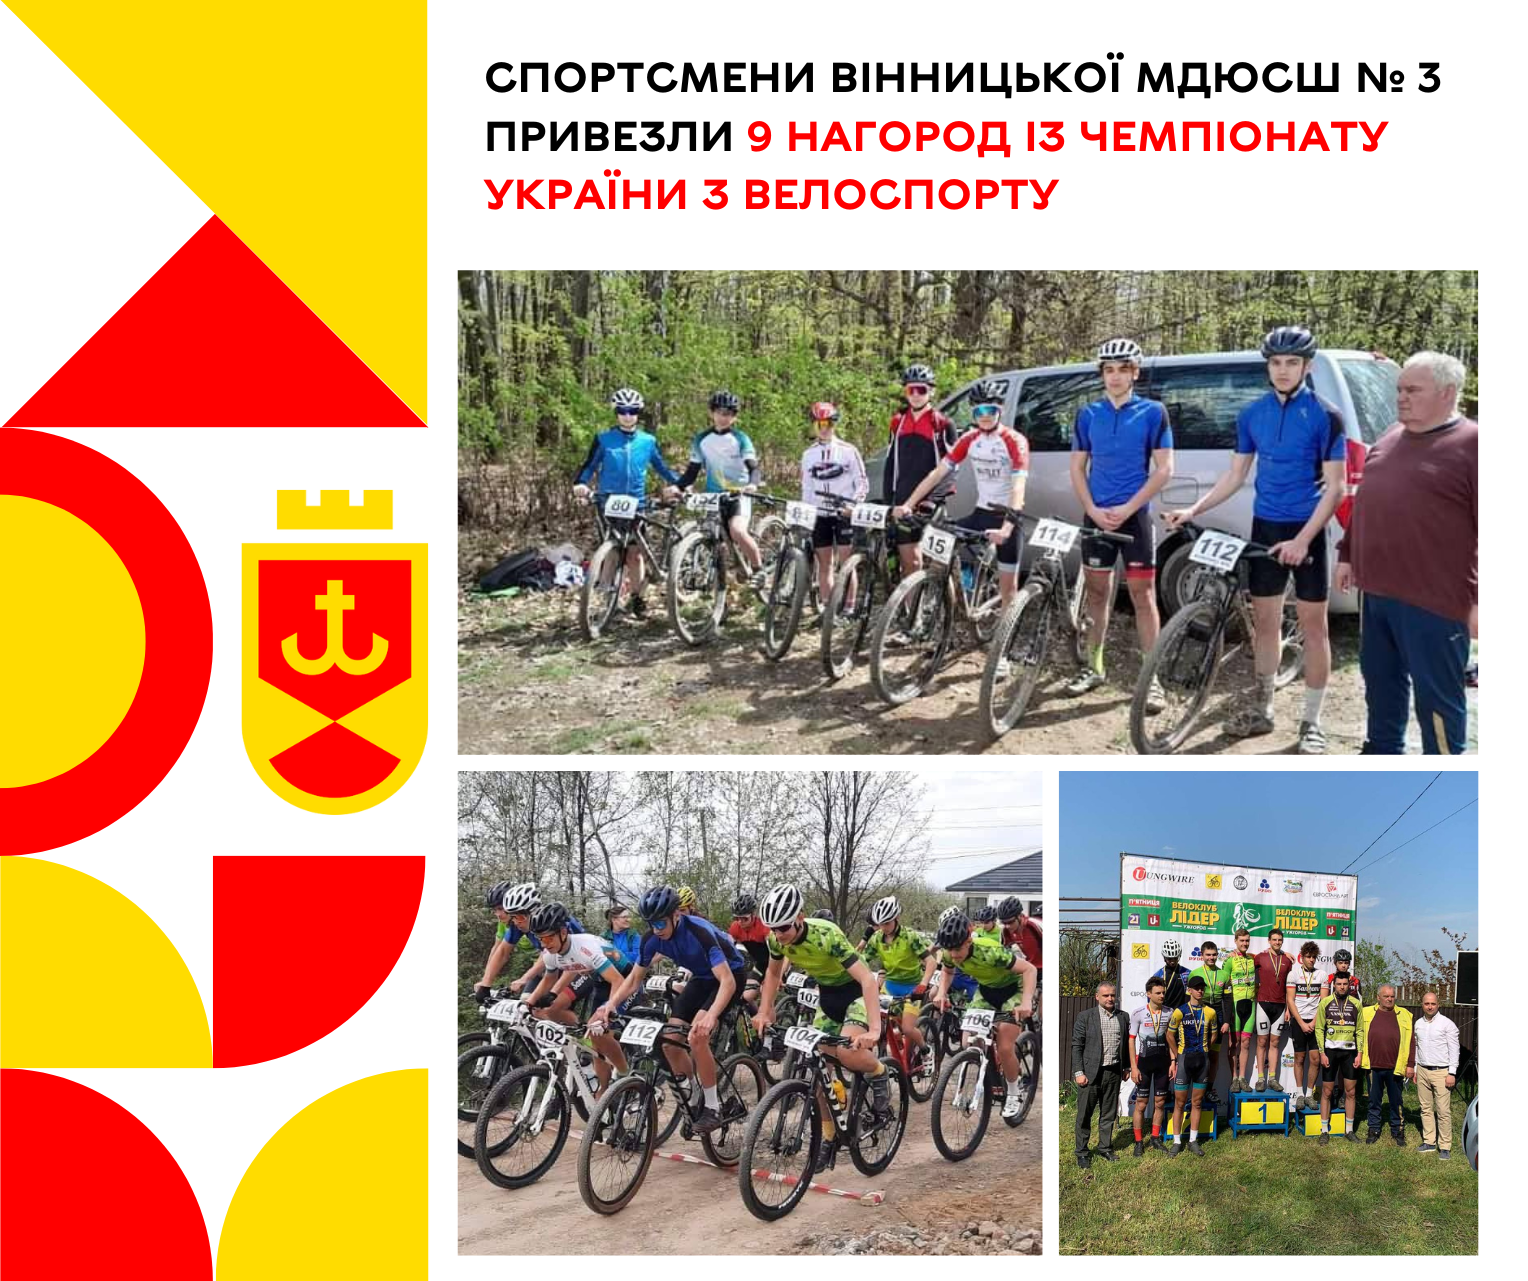 Спортсмени Вінницької МДЮСШ № 3 привезли 9 нагород із чемпіонату України з велоспорту